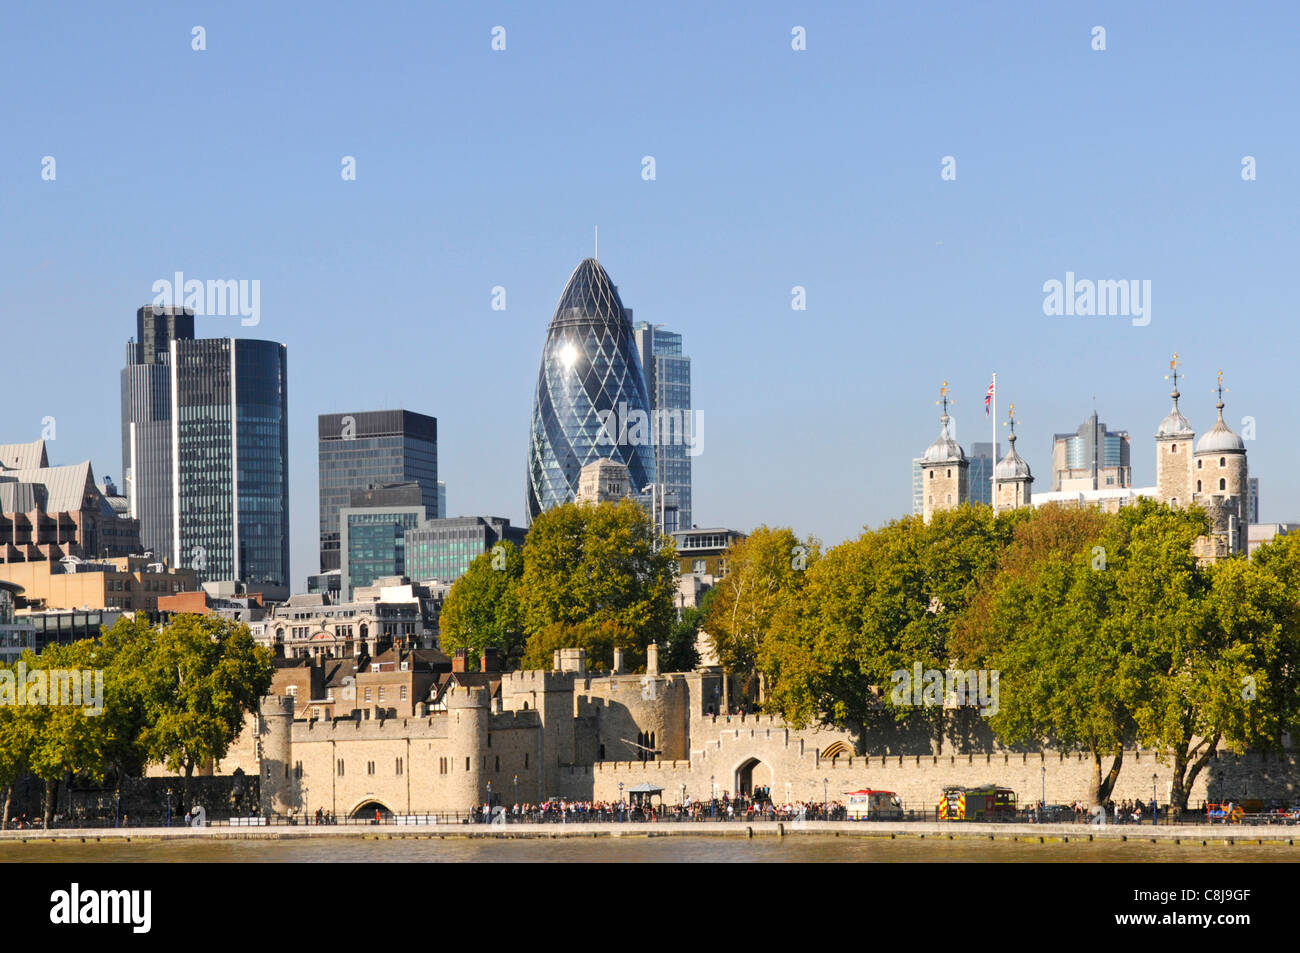 Paesaggio urbano lungo il fiume storico lungomare Torre di Londra e punto di riferimento skyline grattacieli uffici edifici e Gherkin nella città di Londra Inghilterra Regno Unito Foto Stock